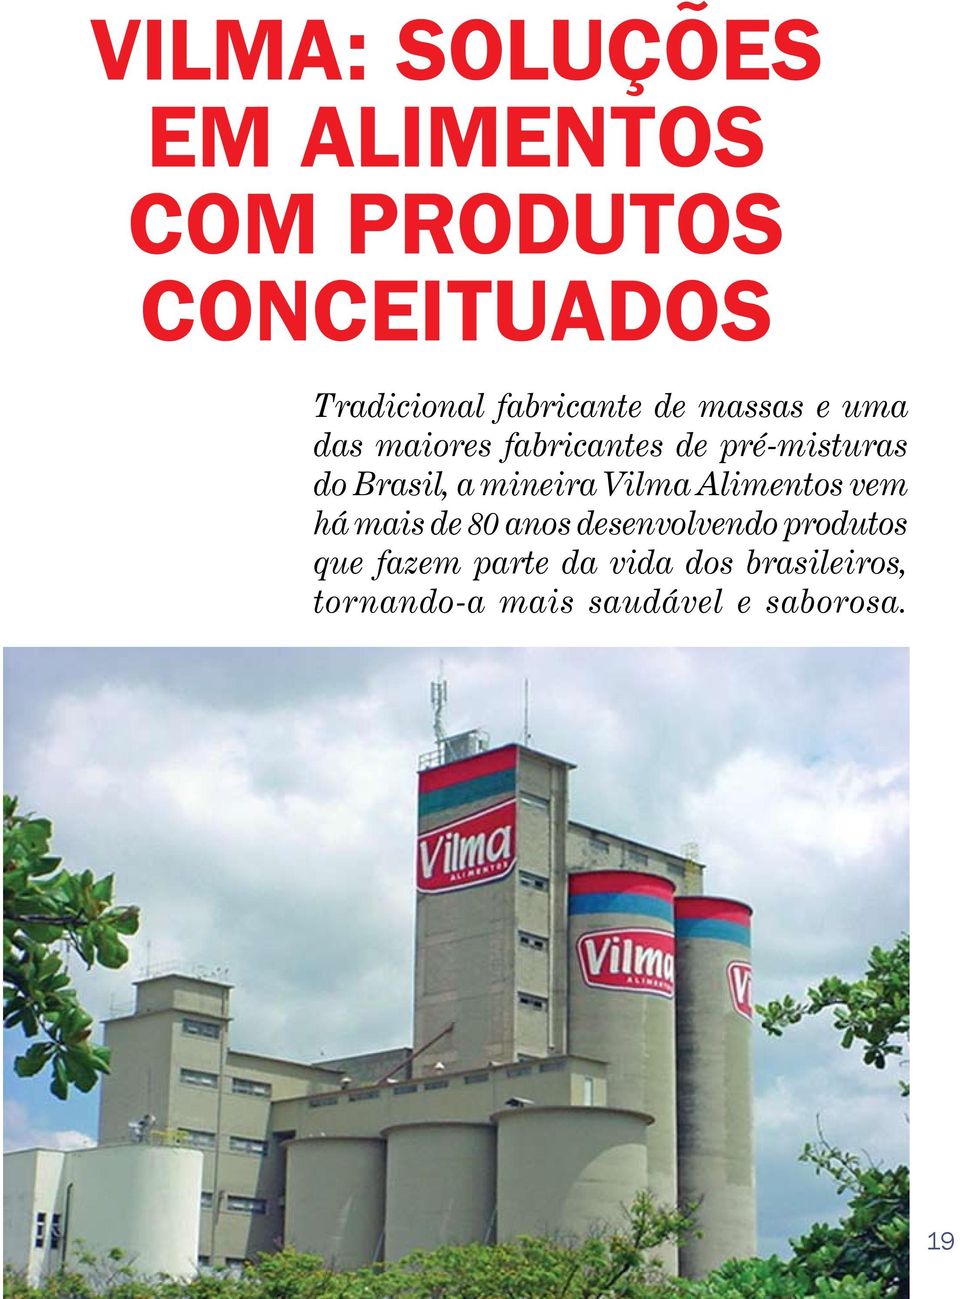 Brasil, a mineira Vilma Alimentos vem há mais de 80 anos desenvolvendo